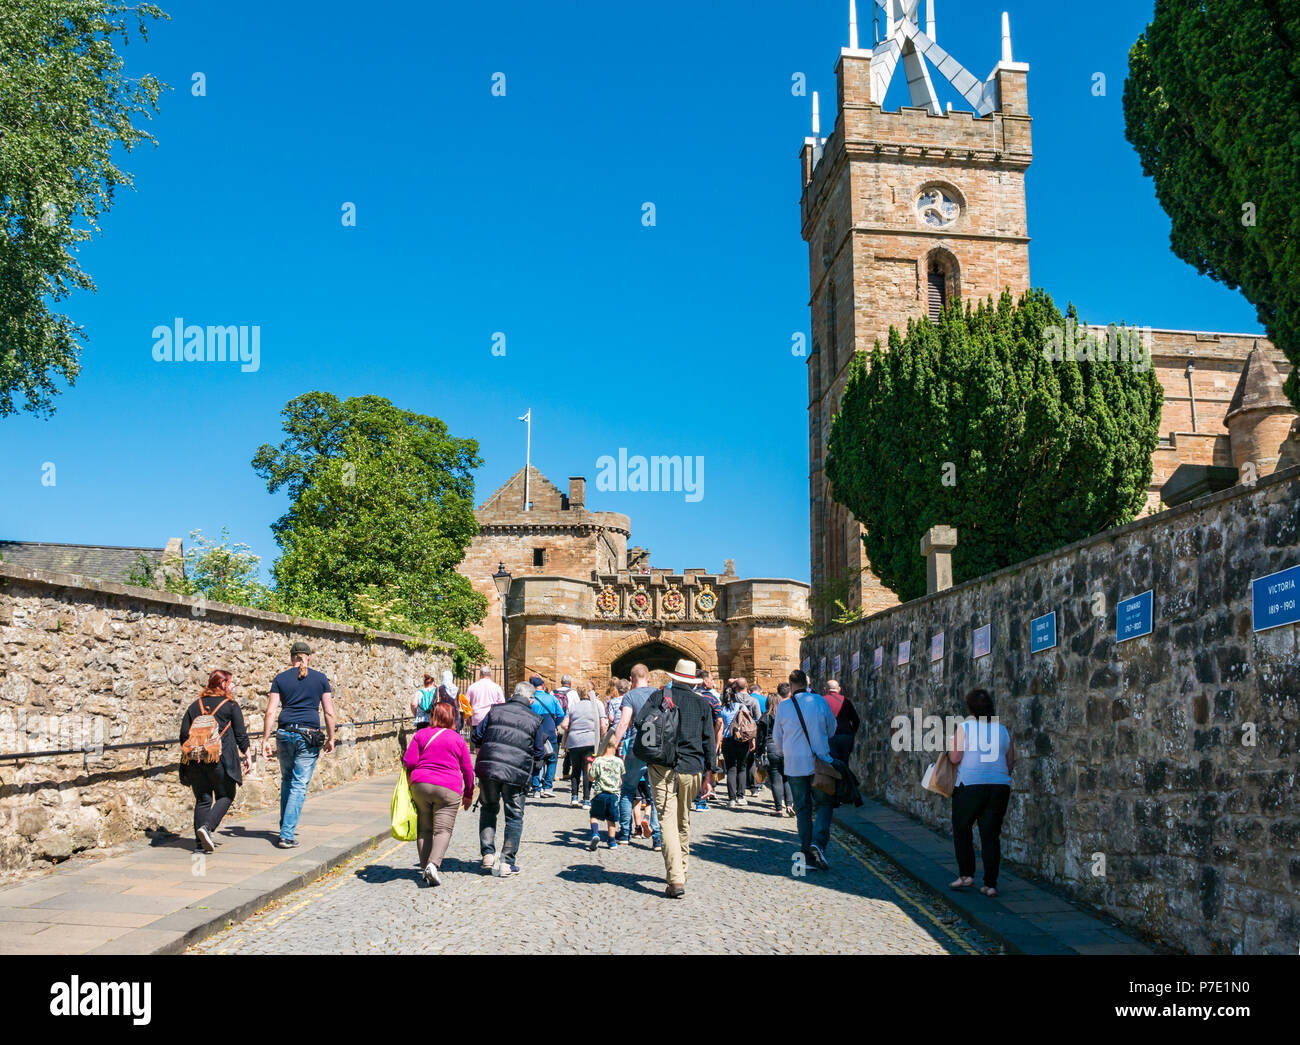 La folla di gente che passeggia nella porta d'ingresso su intrattenimento estivo giostre giornata con cielo blu a Linlithgow Palace, West Lothian, Scozia, Regno Unito Foto Stock